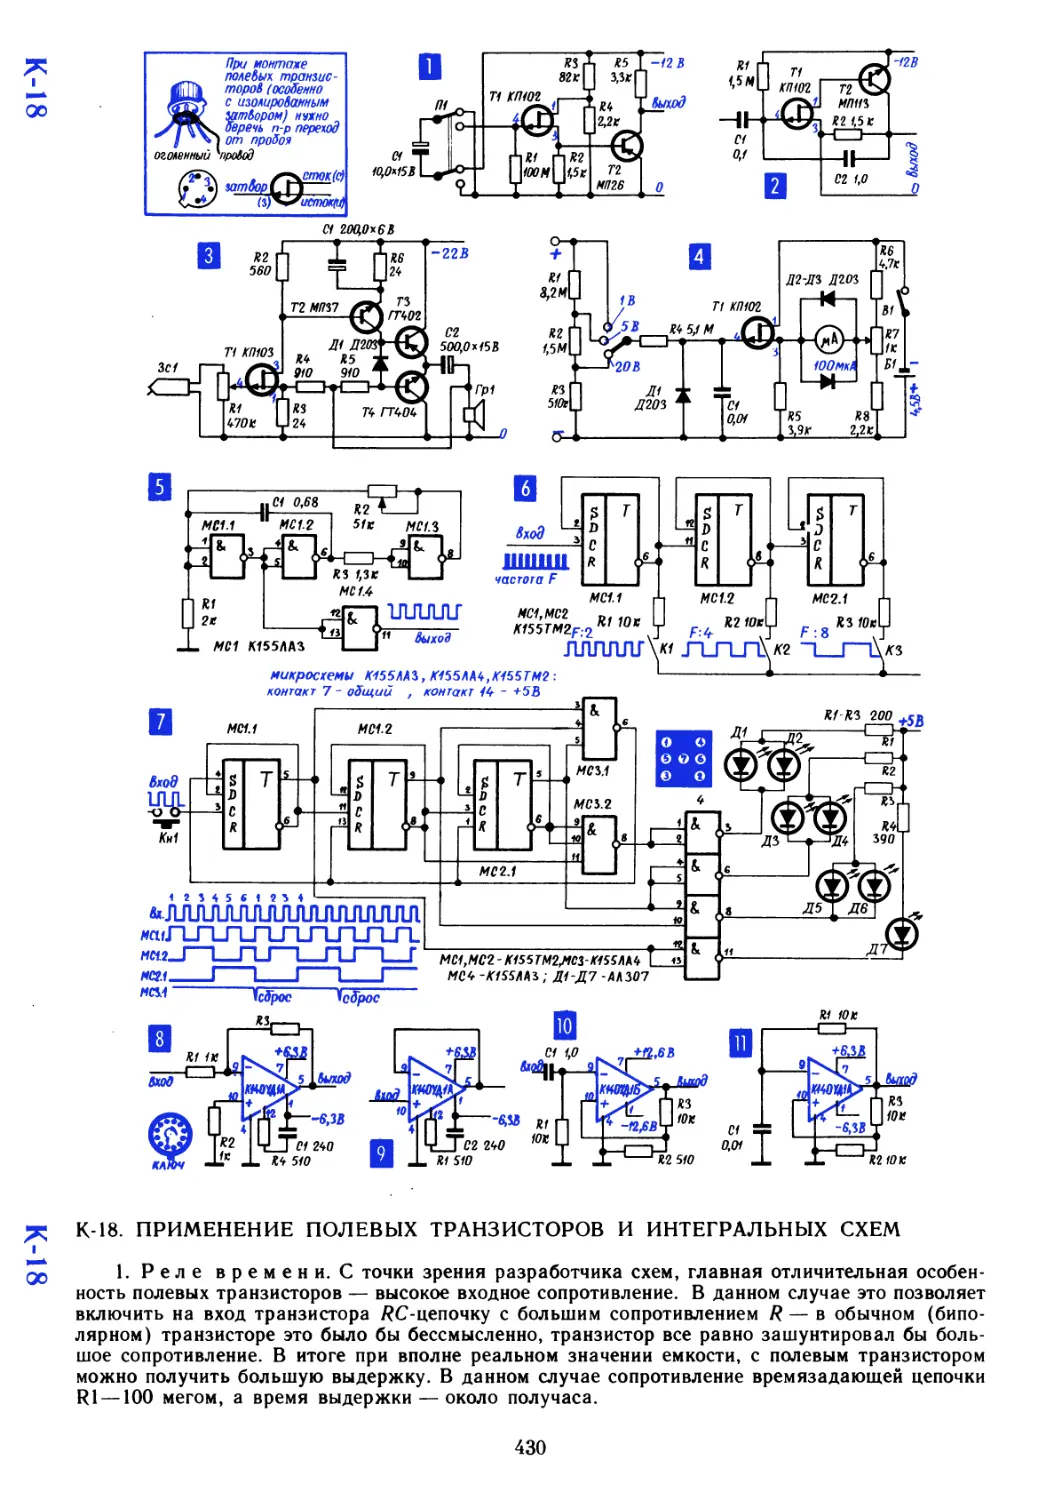 К-18 Применение полевых транзисторов и интегральных схем
Р-181
Р-181
К-18